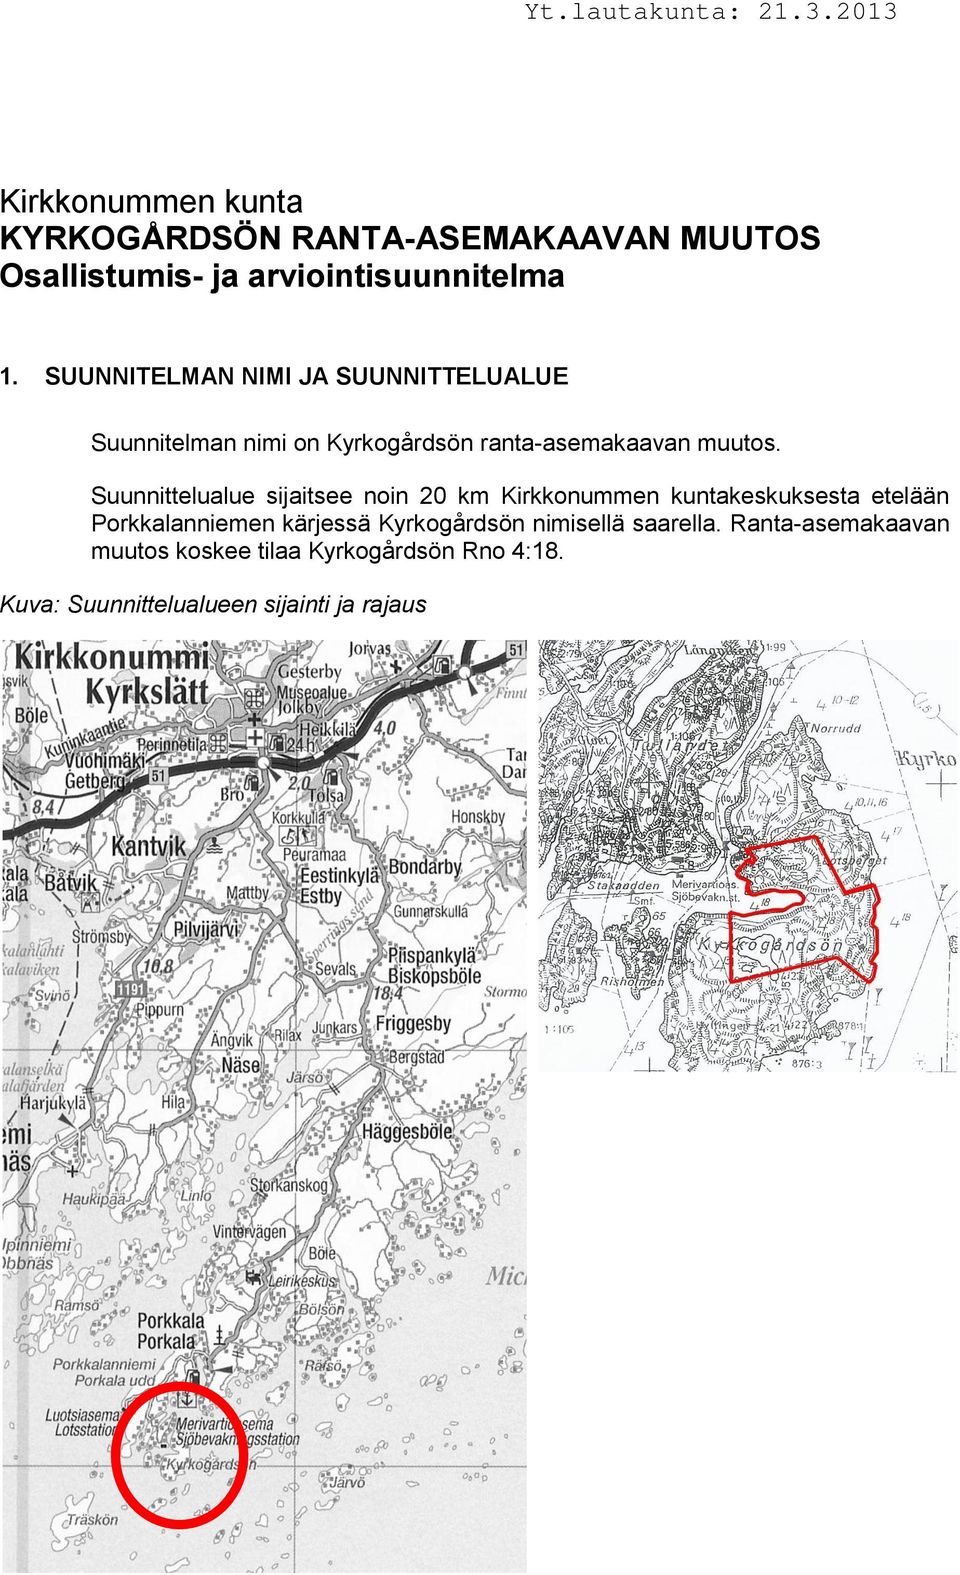 Suunnittelualue sijaitsee noin 20 km Kirkkonummen kuntakeskuksesta etelään Porkkalanniemen kärjessä